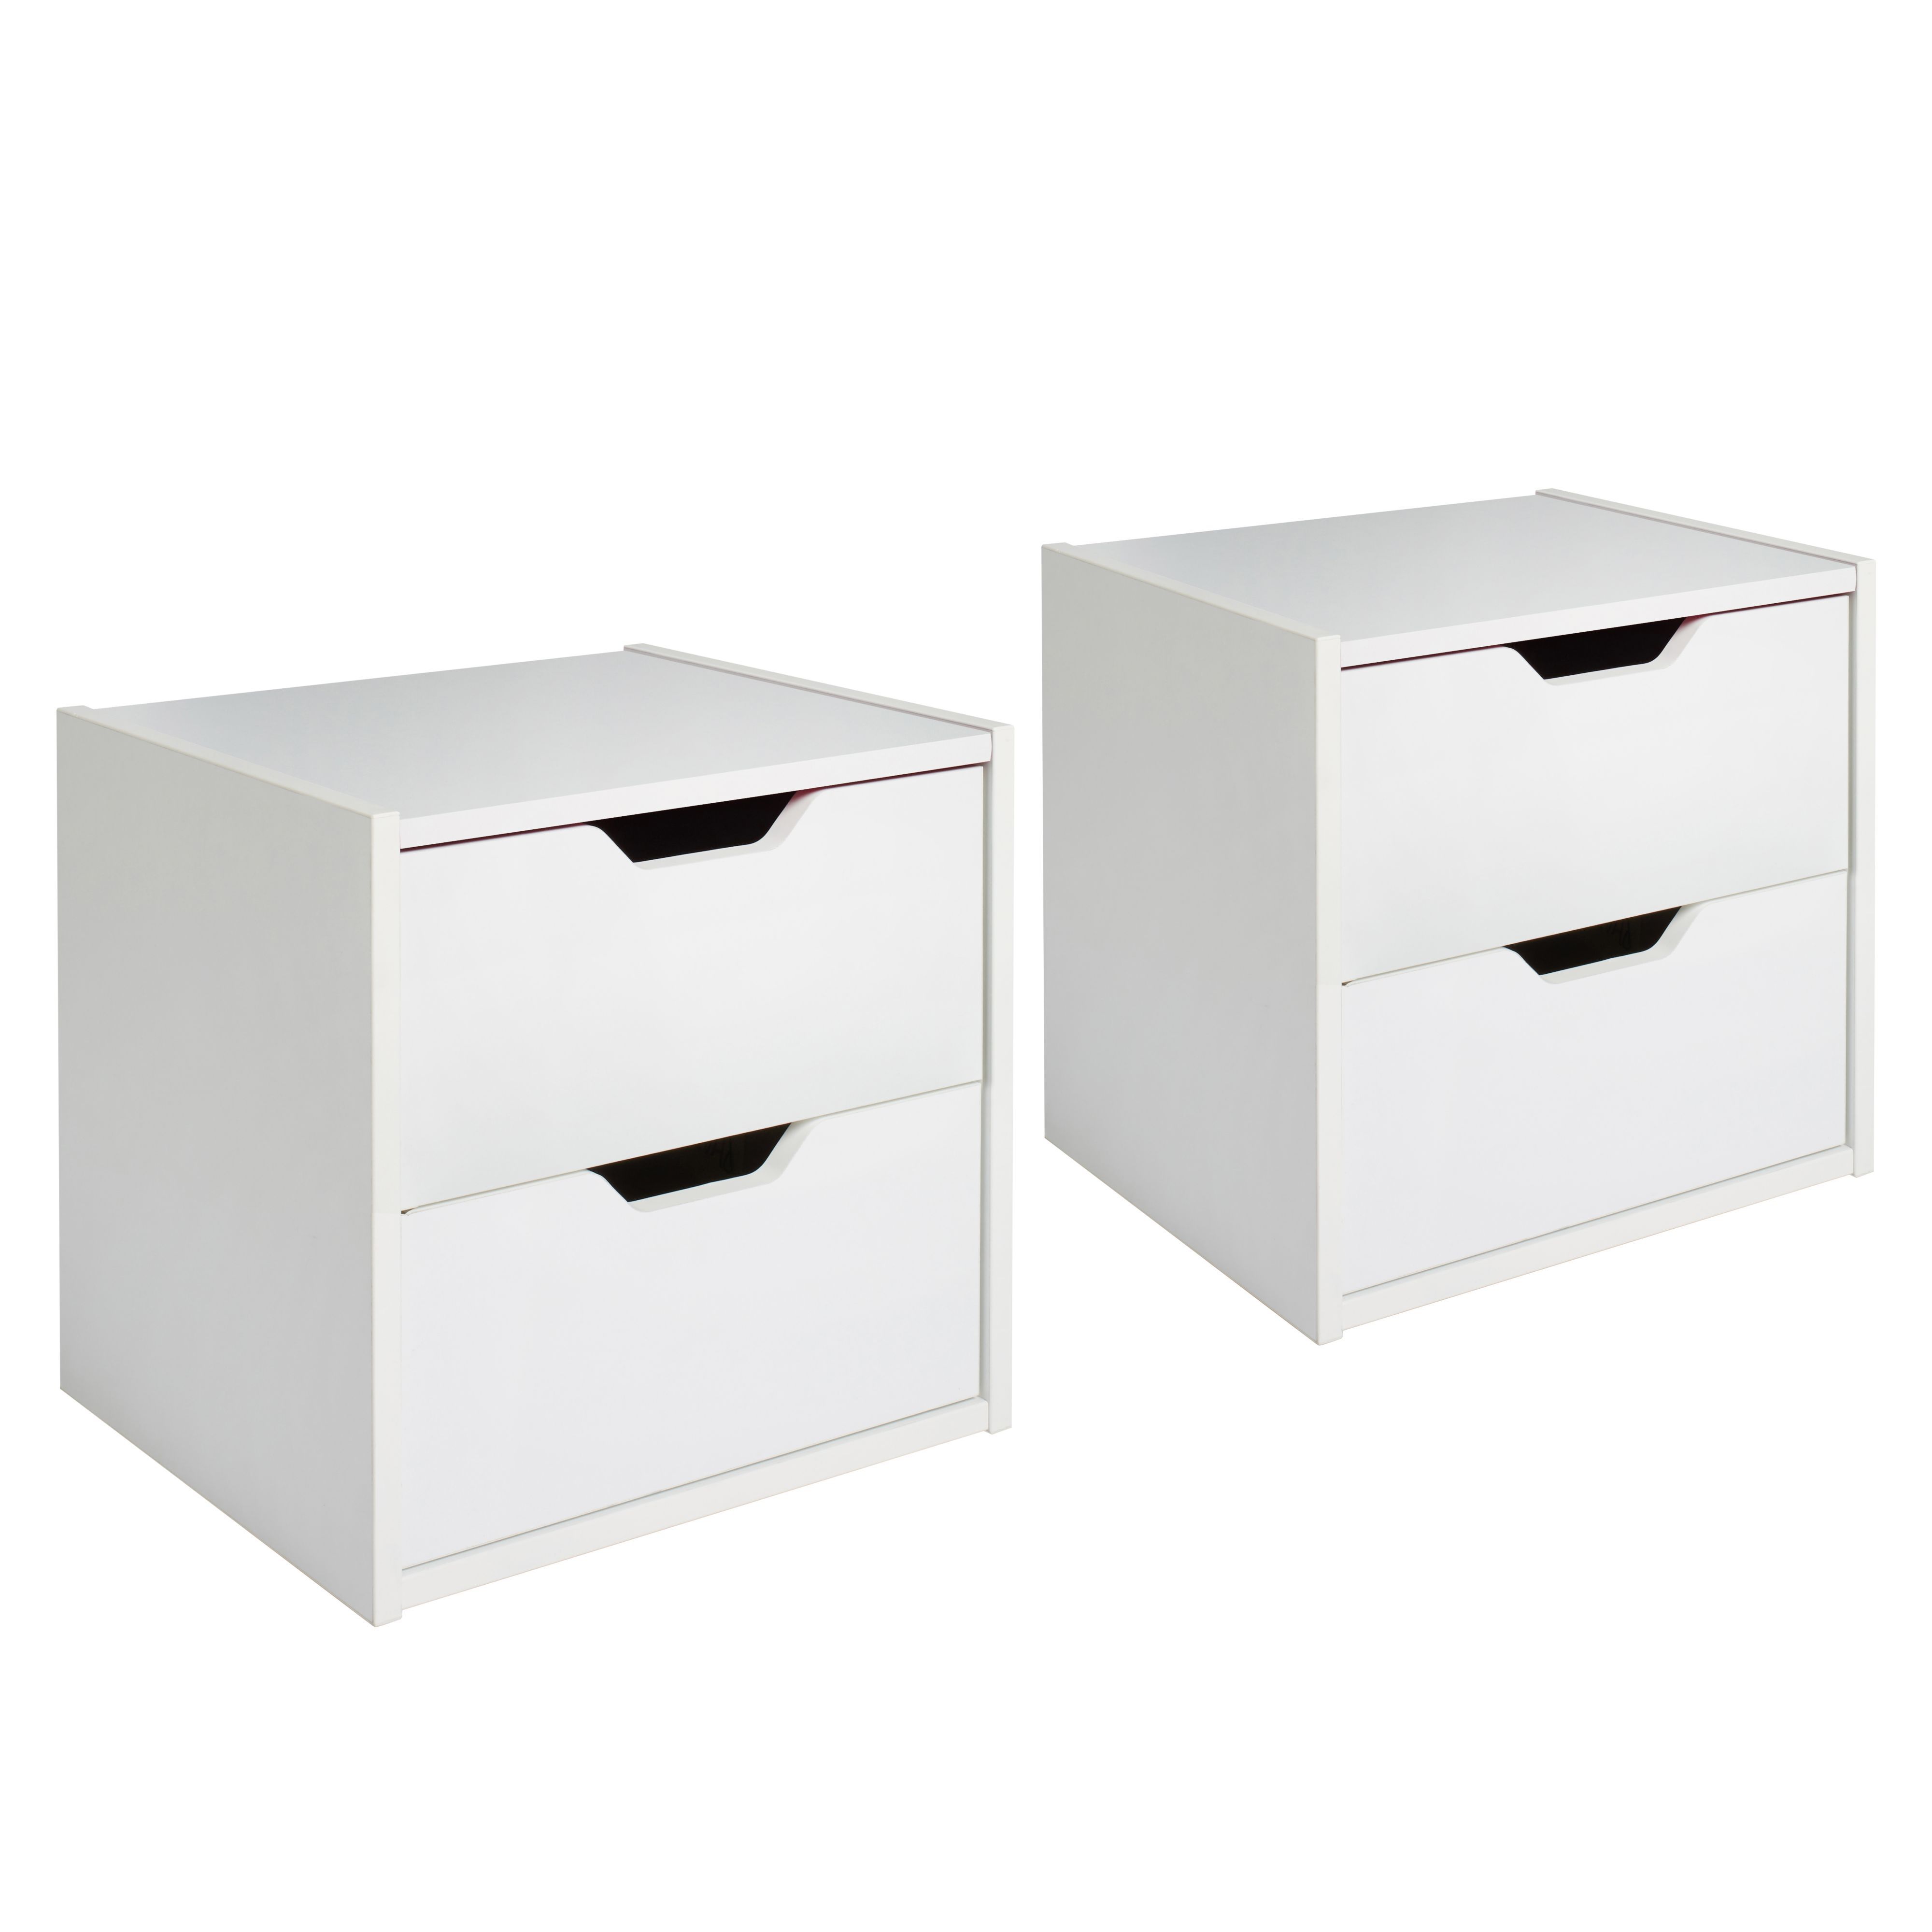 Hartnett White 2 Drawer Bedside chest, Set of 2 (H)435mm (W)450mm (D)388mm